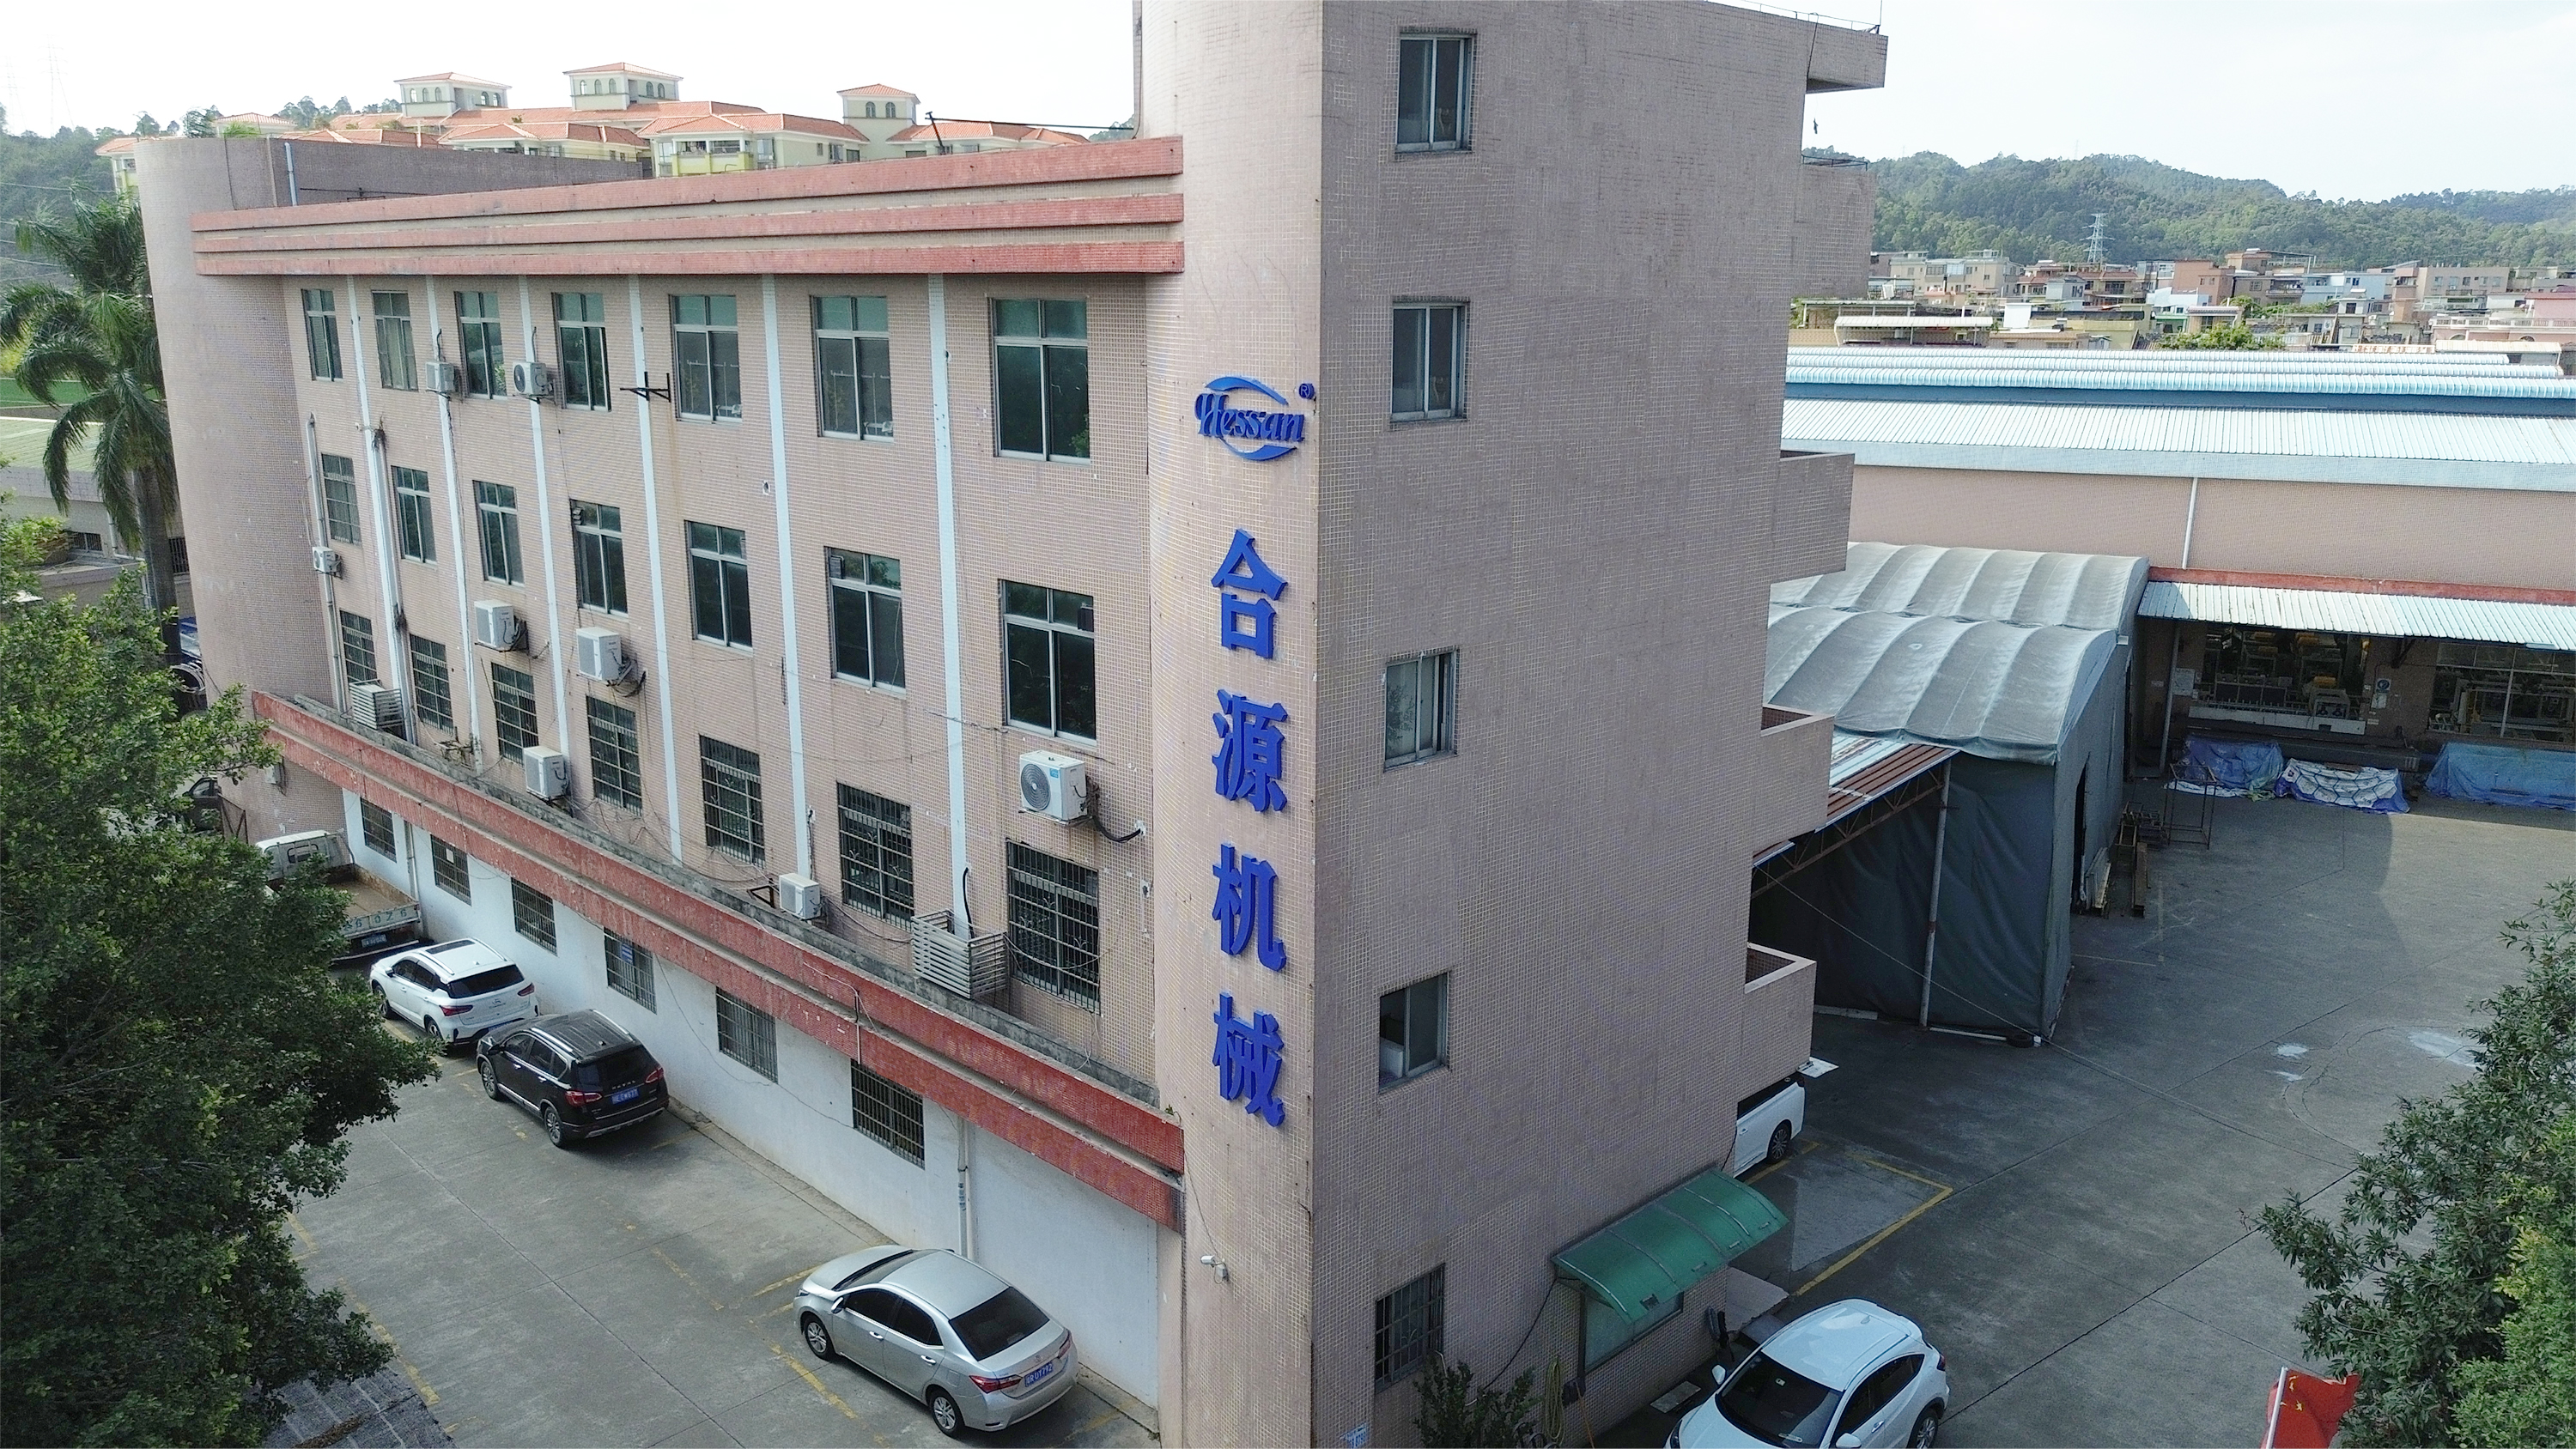 Guangzhou Hessan Woodworking Machinery Co, Ltd